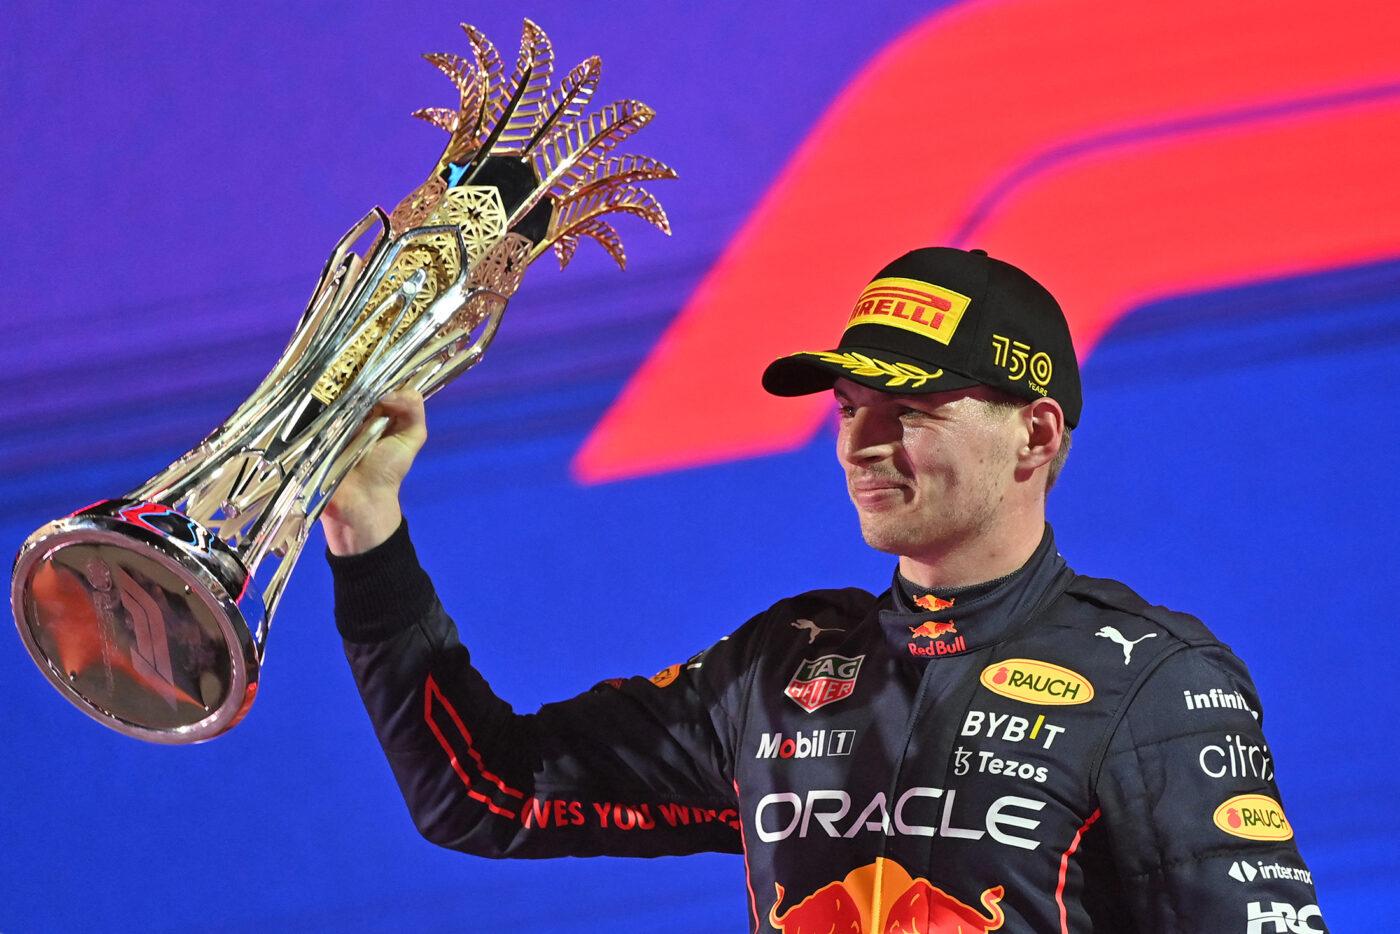 Best trophy you've seen awarded? : r/formula1